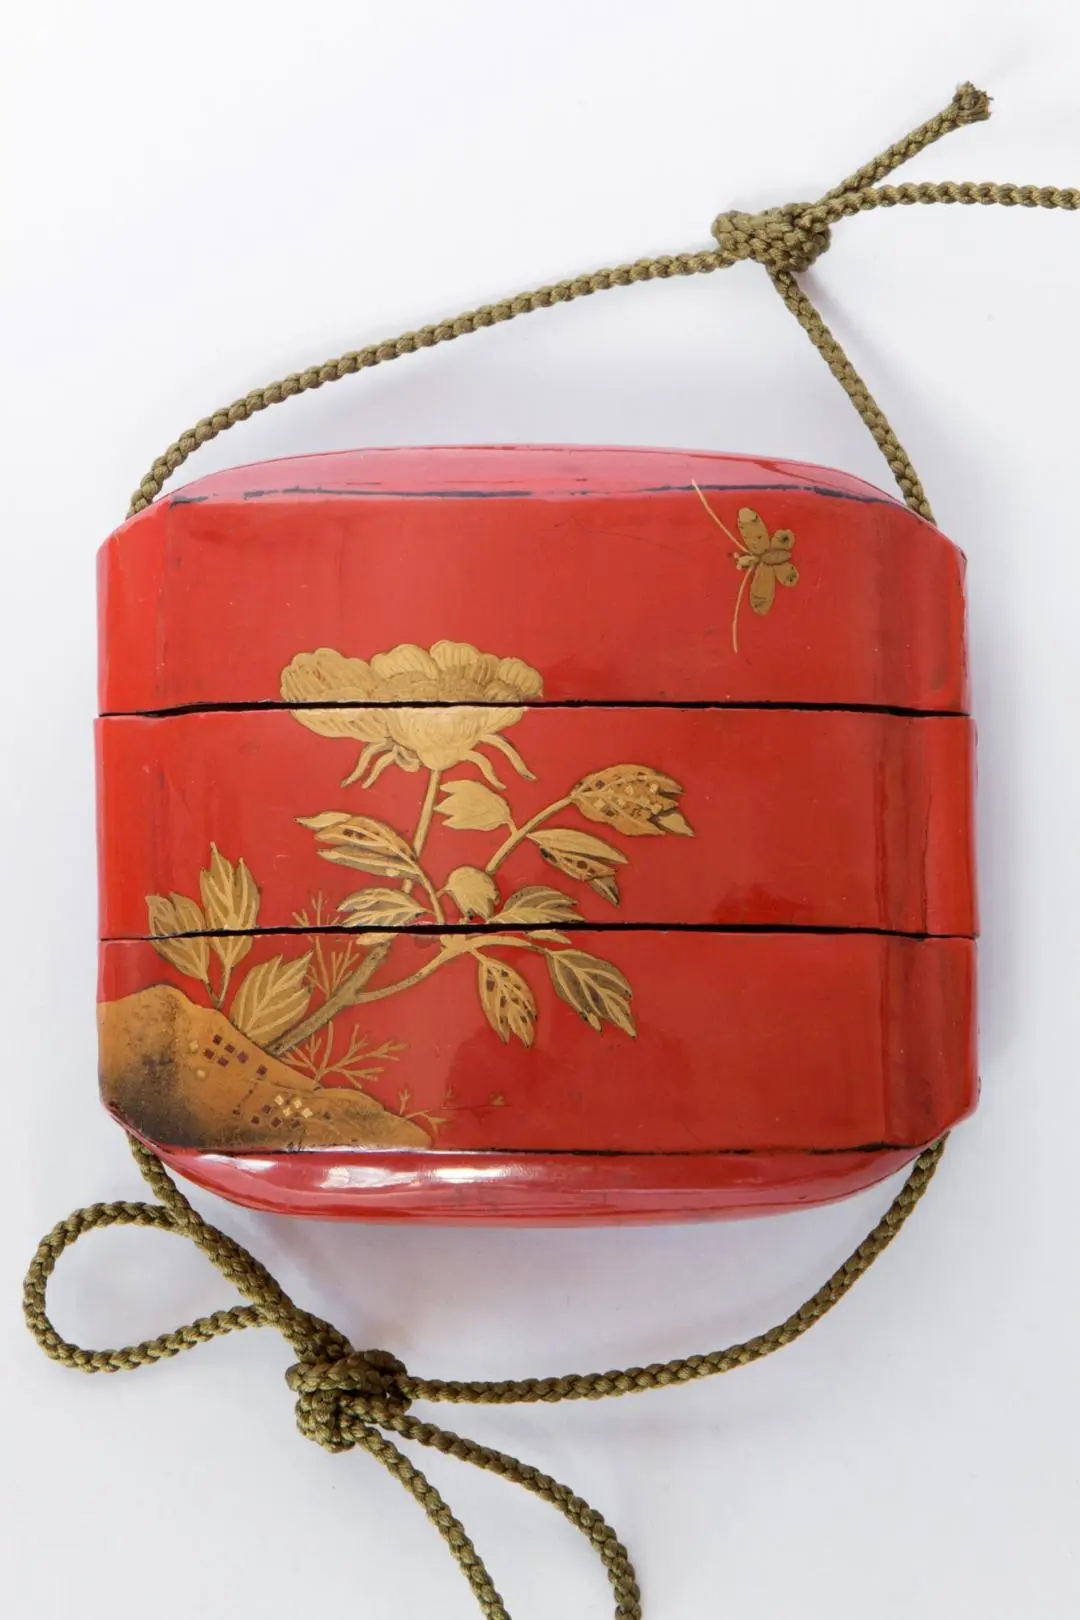 三段式漆器印笼十八世纪末日本江户时代(1603 – 1868)出品印笼是日本江 